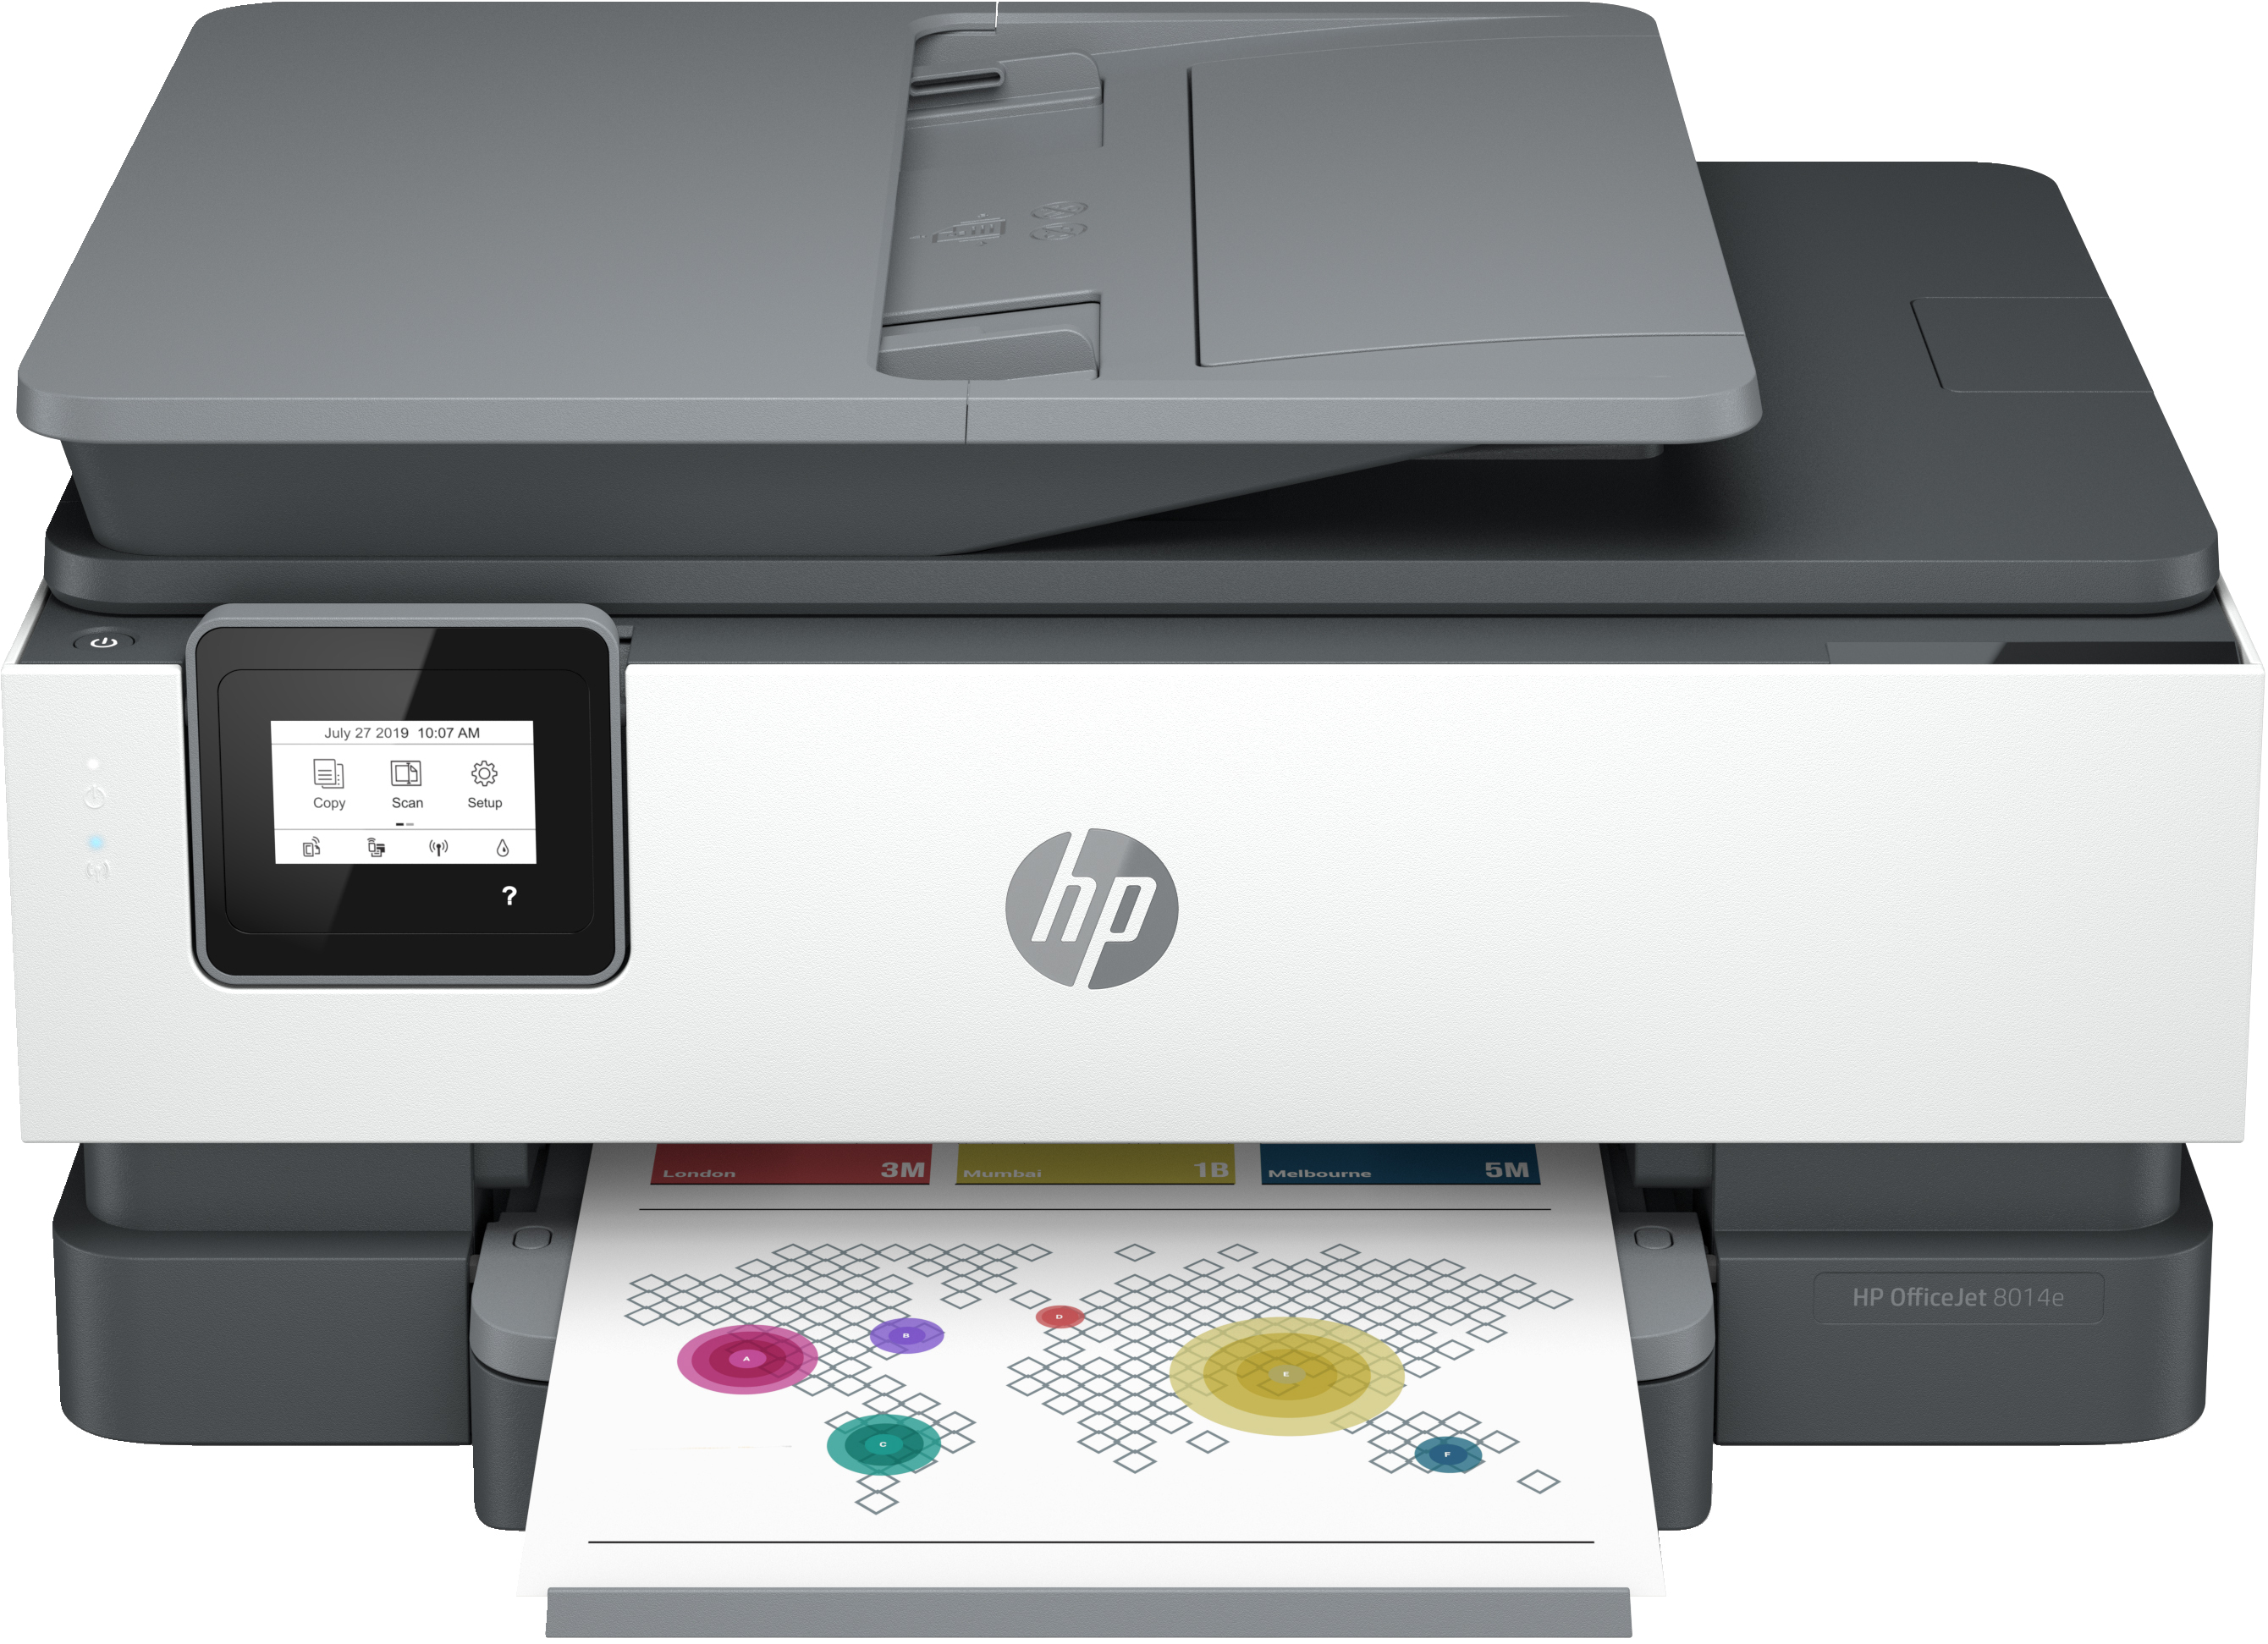 HP OfficeJet HP 8014e Allt-i-ett-skrivare, Färg, Skrivare för Hemma, Skriv ut, kopiera, skanna, HP+; Berättigad till HP Instant Ink; Automatisk dokumentmatare; Dubbelsidig utskrift